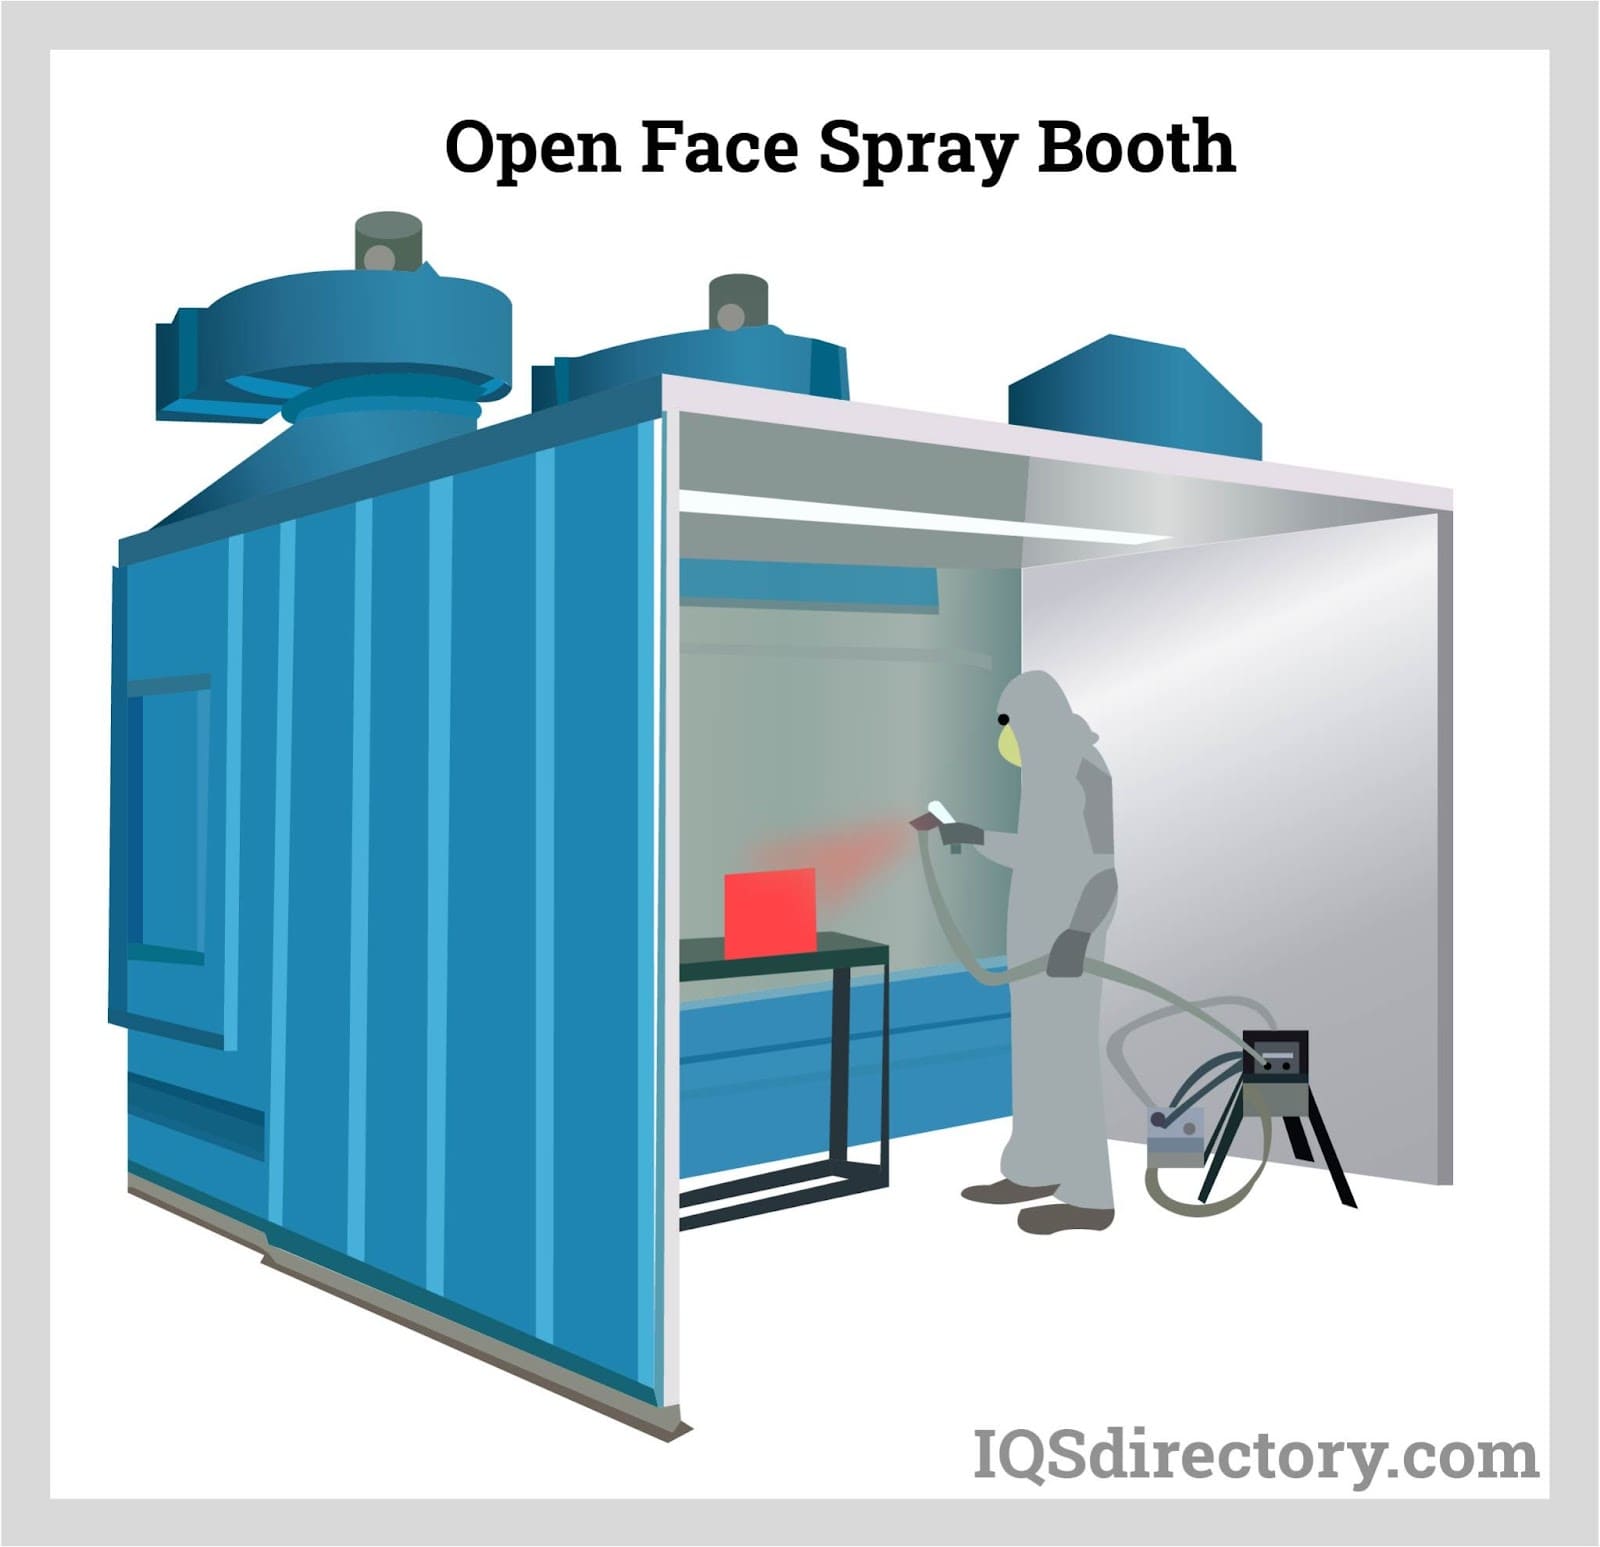 Open Face Spray Booth